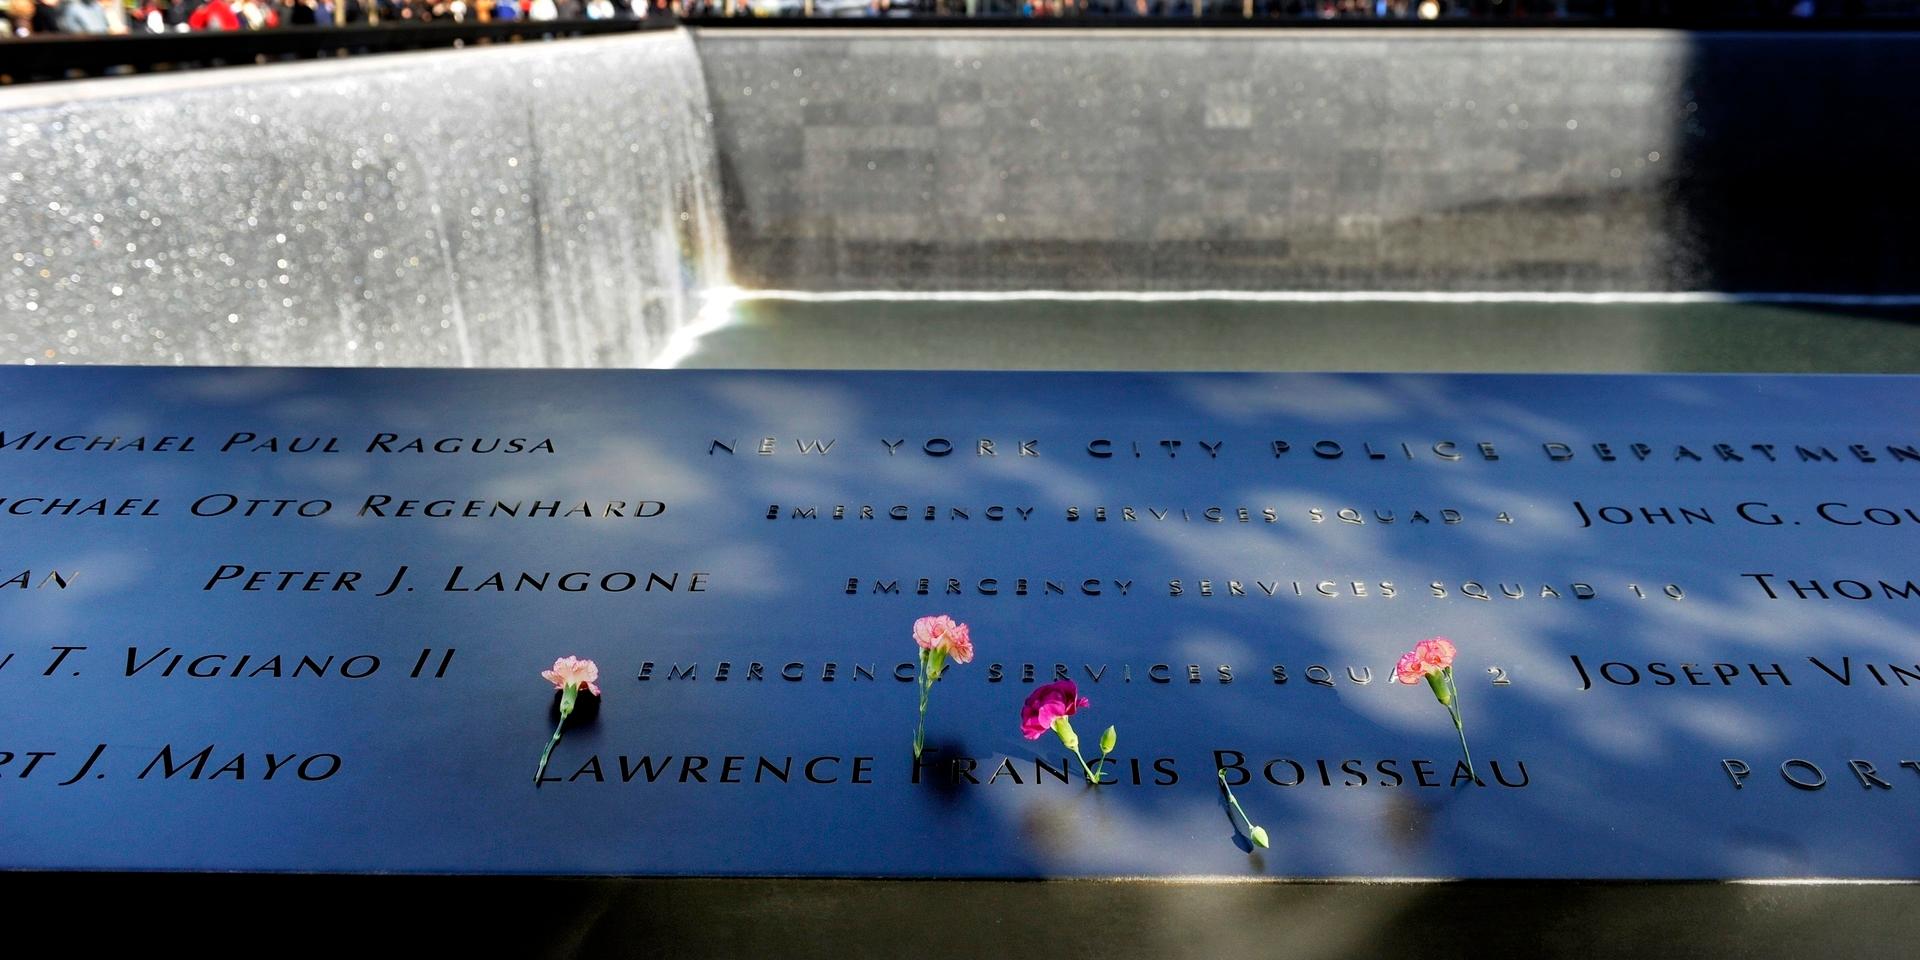 20 år har gått sedan attackerna mot World Trade Center och Pentagon den 11 september 2001. 